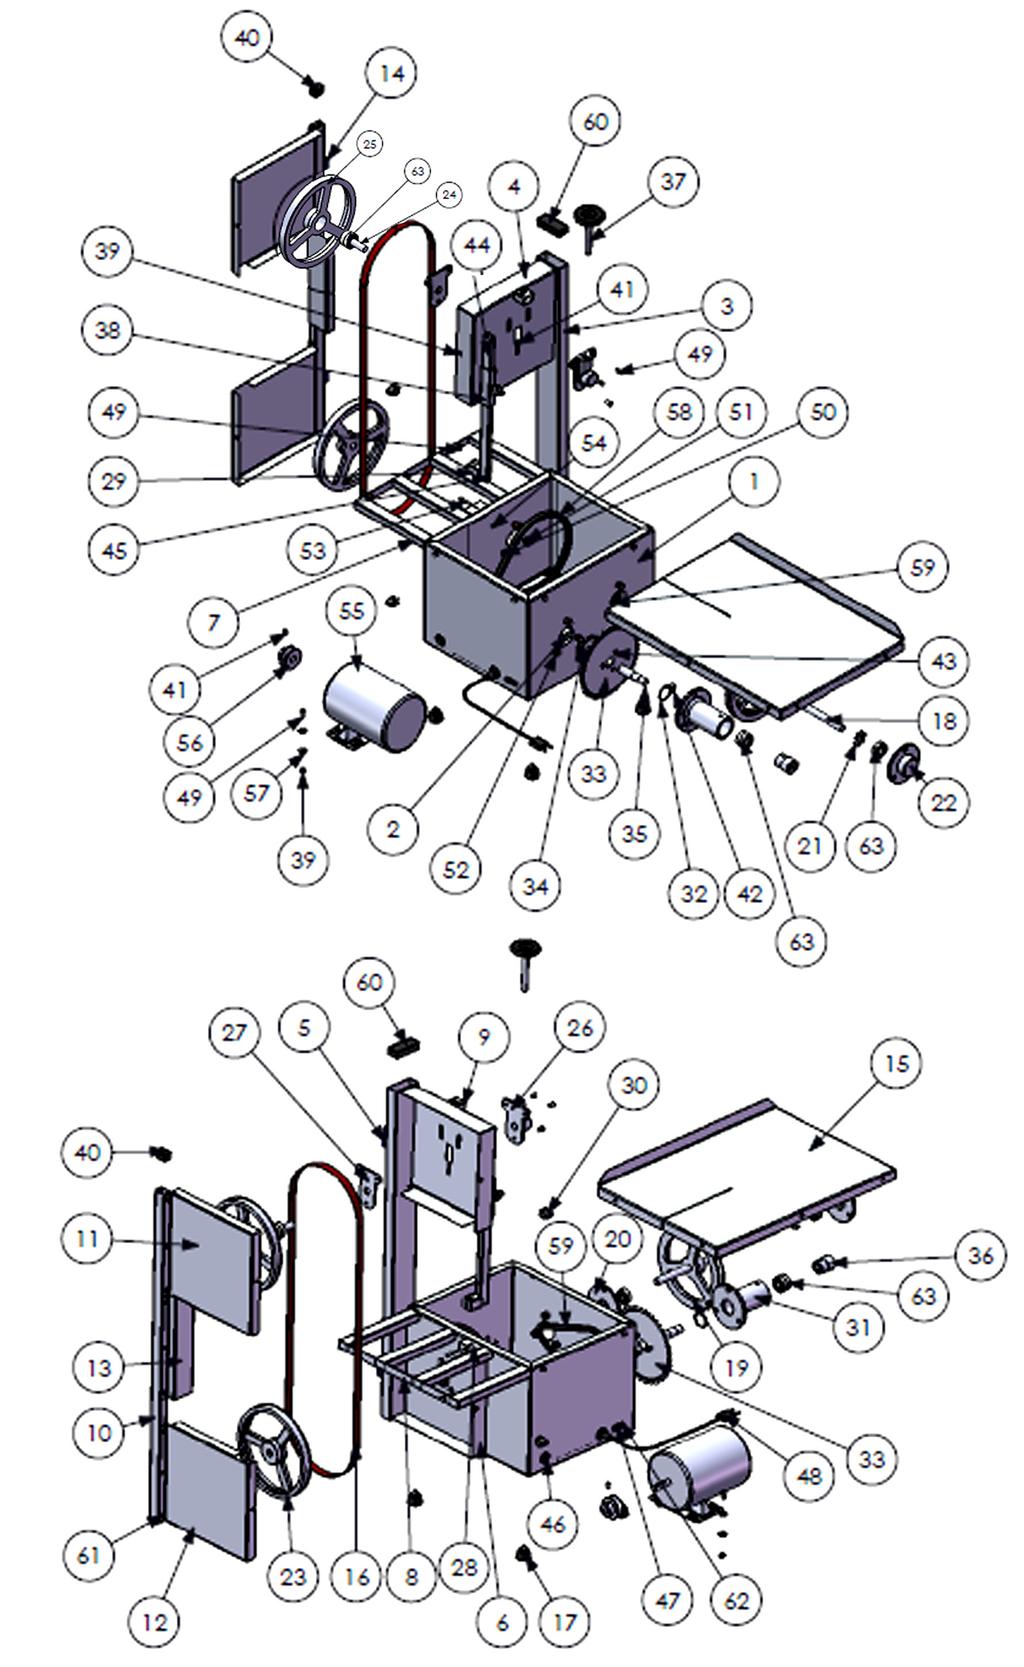 04 Instalação Para obter uma eficácia da máquina, a Serra Fita deve ser instalada sobre uma superfície plana e robusta, que atenda a ergonomia do operador.